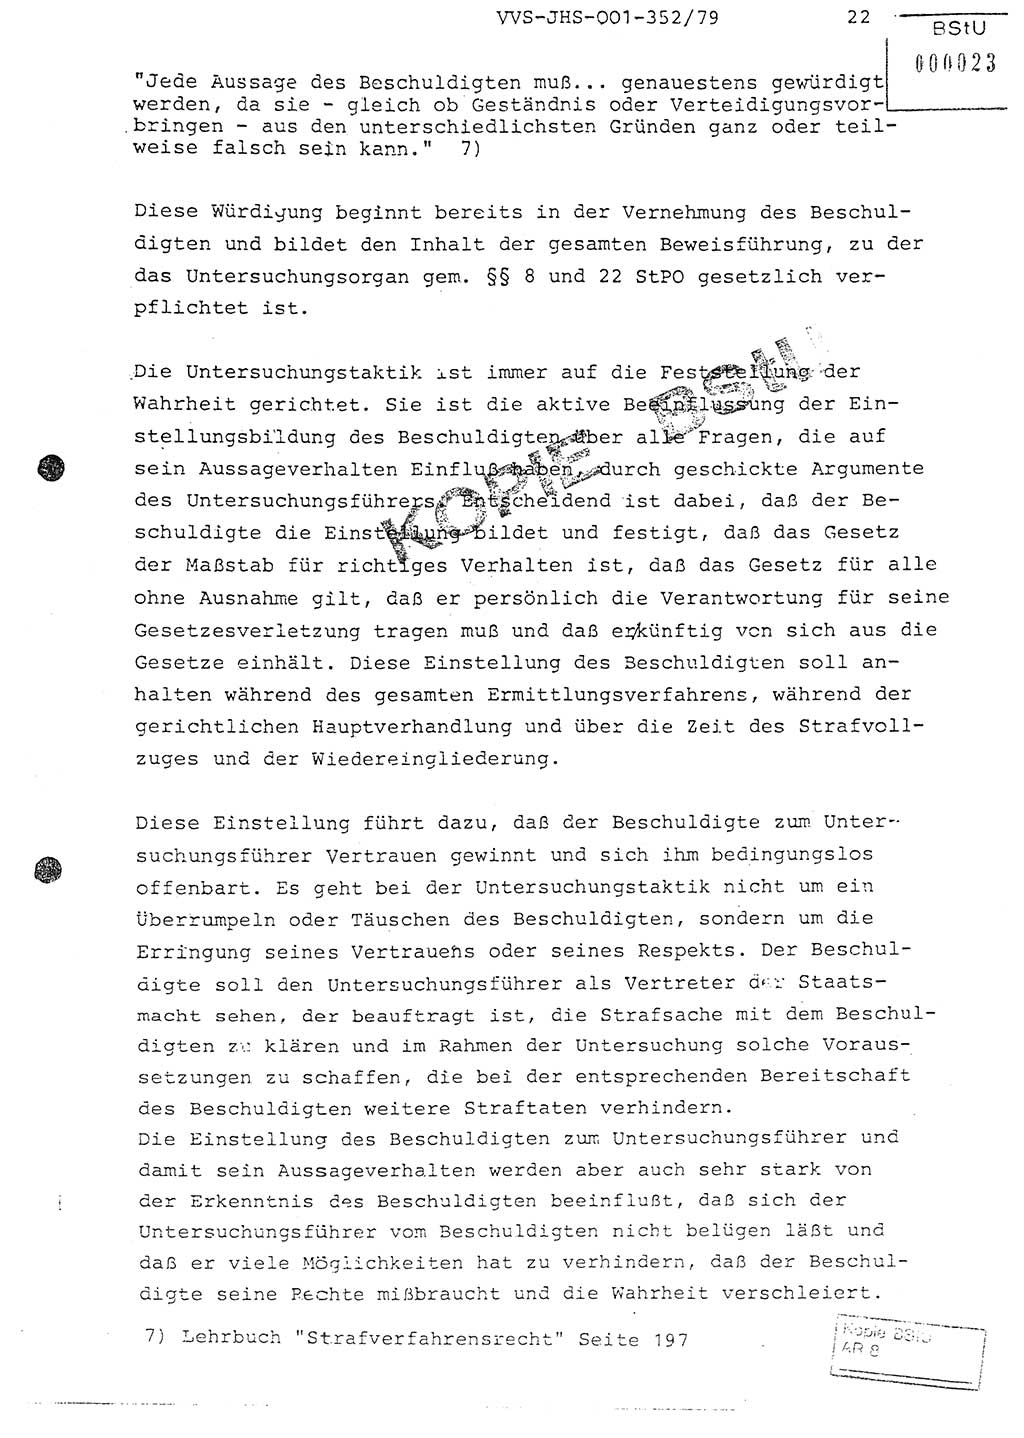 Diplomarbeit Hauptmann Peter Wittum (BV Bln. Abt. HA Ⅸ), Ministerium für Staatssicherheit (MfS) [Deutsche Demokratische Republik (DDR)], Juristische Hochschule (JHS), Vertrauliche Verschlußsache (VVS) o001-352/79, Potsdam 1979, Seite 22 (Dipl.-Arb. MfS DDR JHS VVS o001-352/79 1979, S. 22)